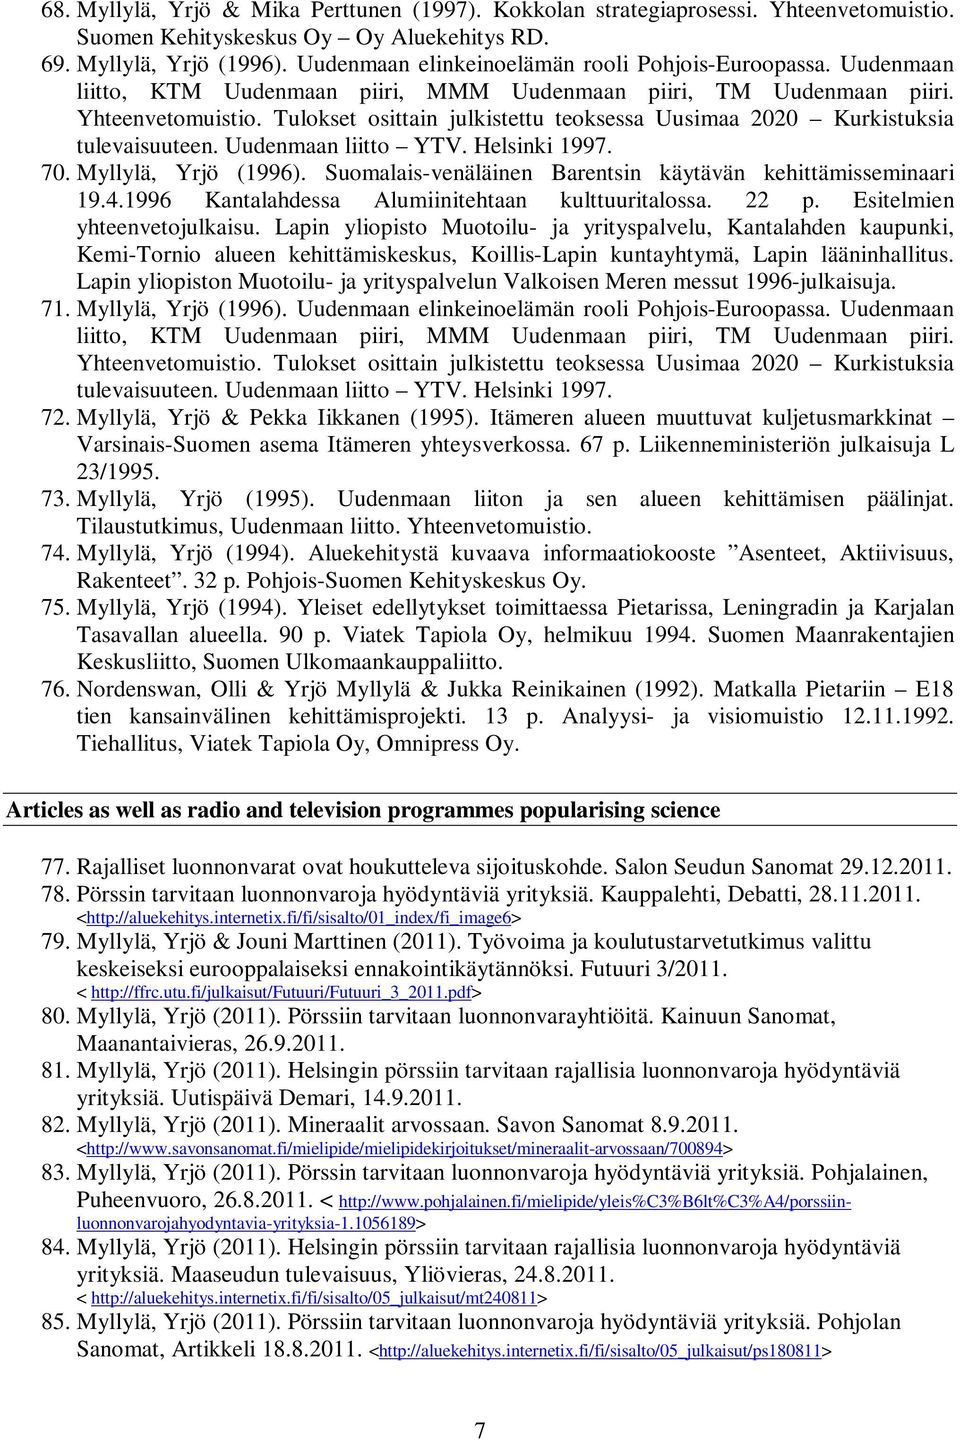 Tulokset osittain julkistettu teoksessa Uusimaa 2020 Kurkistuksia tulevaisuuteen. Uudenmaan liitto YTV. Helsinki 1997. 70. Myllylä, Yrjö (1996).